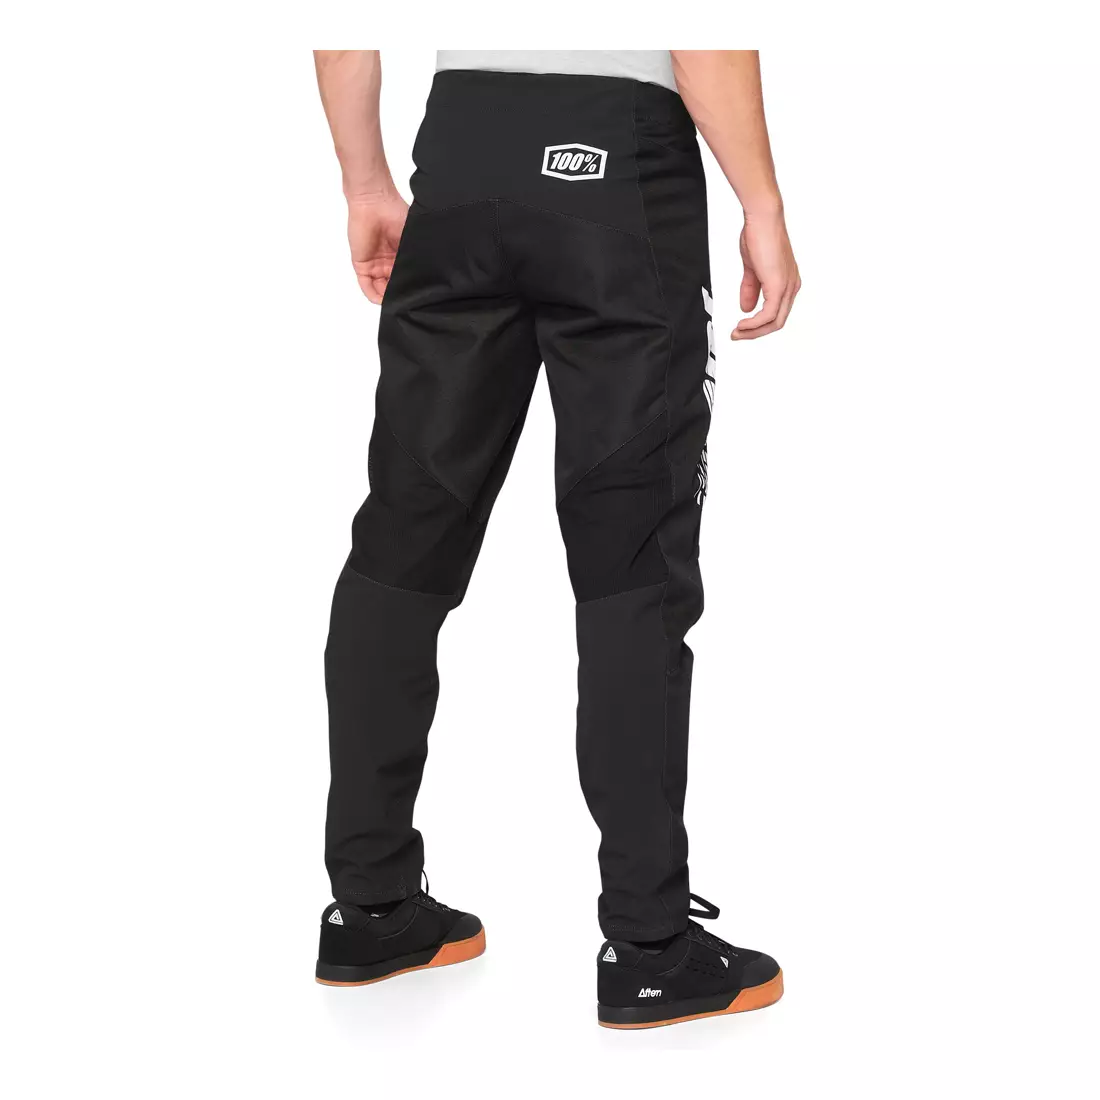 100% spodnie rowerowe dziecięce R-CORE YOUTH PANTS black STO-47102-001-22